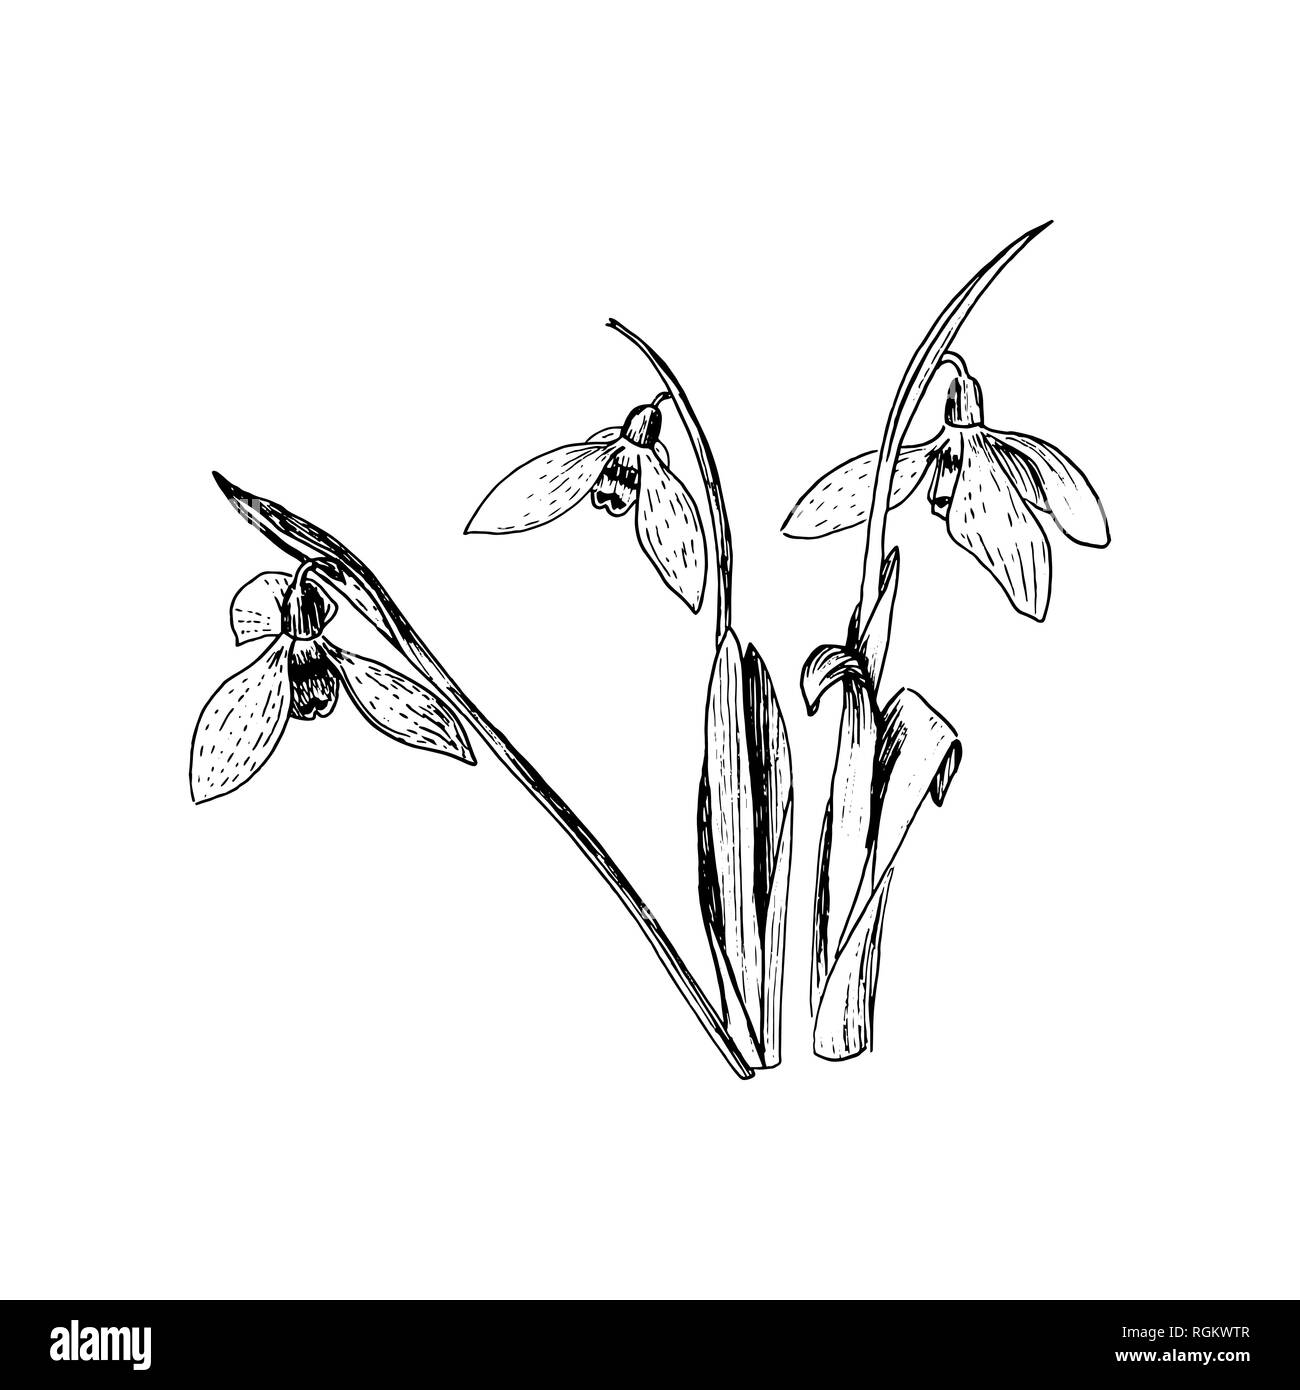 Snowdrop fiori di primavera. Delicato Galanthus nivalis fiore, simboli di primavera. Snowdrop blossoms. Stile Sketsh inchiostro della penna. Illustrazione Vettoriale